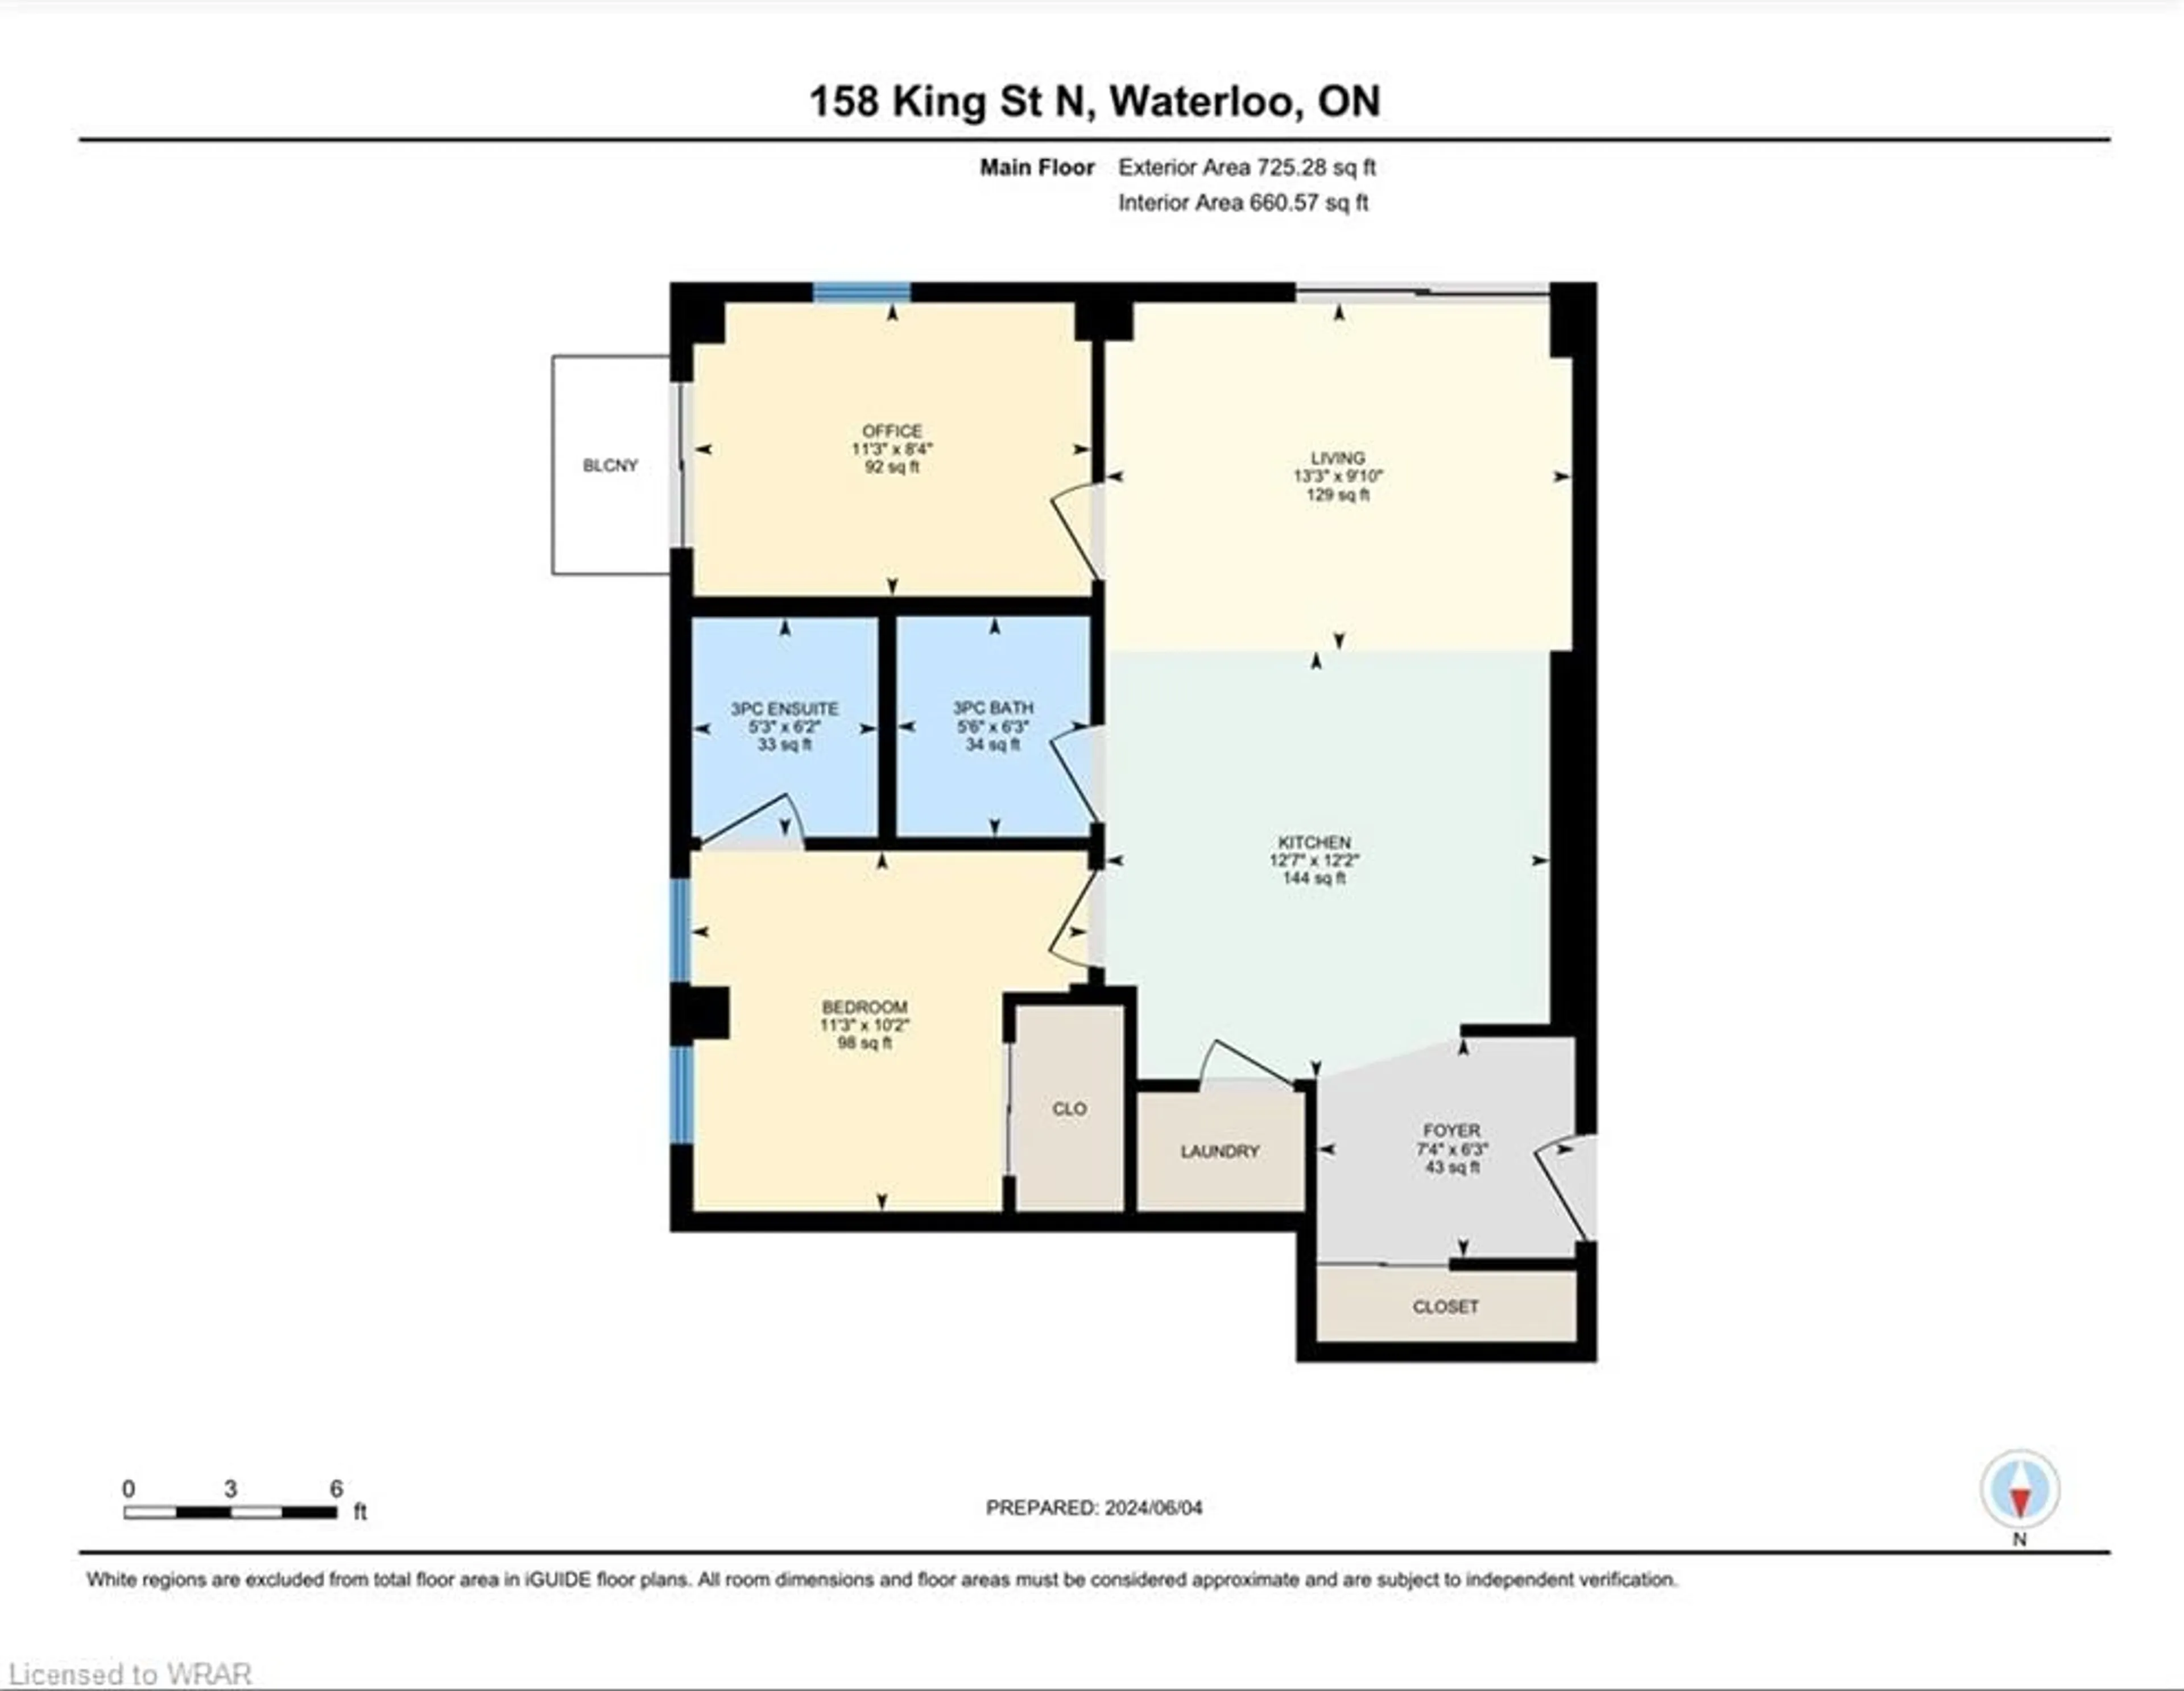 Floor plan for 158 King St #702, Waterloo Ontario N2J 0E5